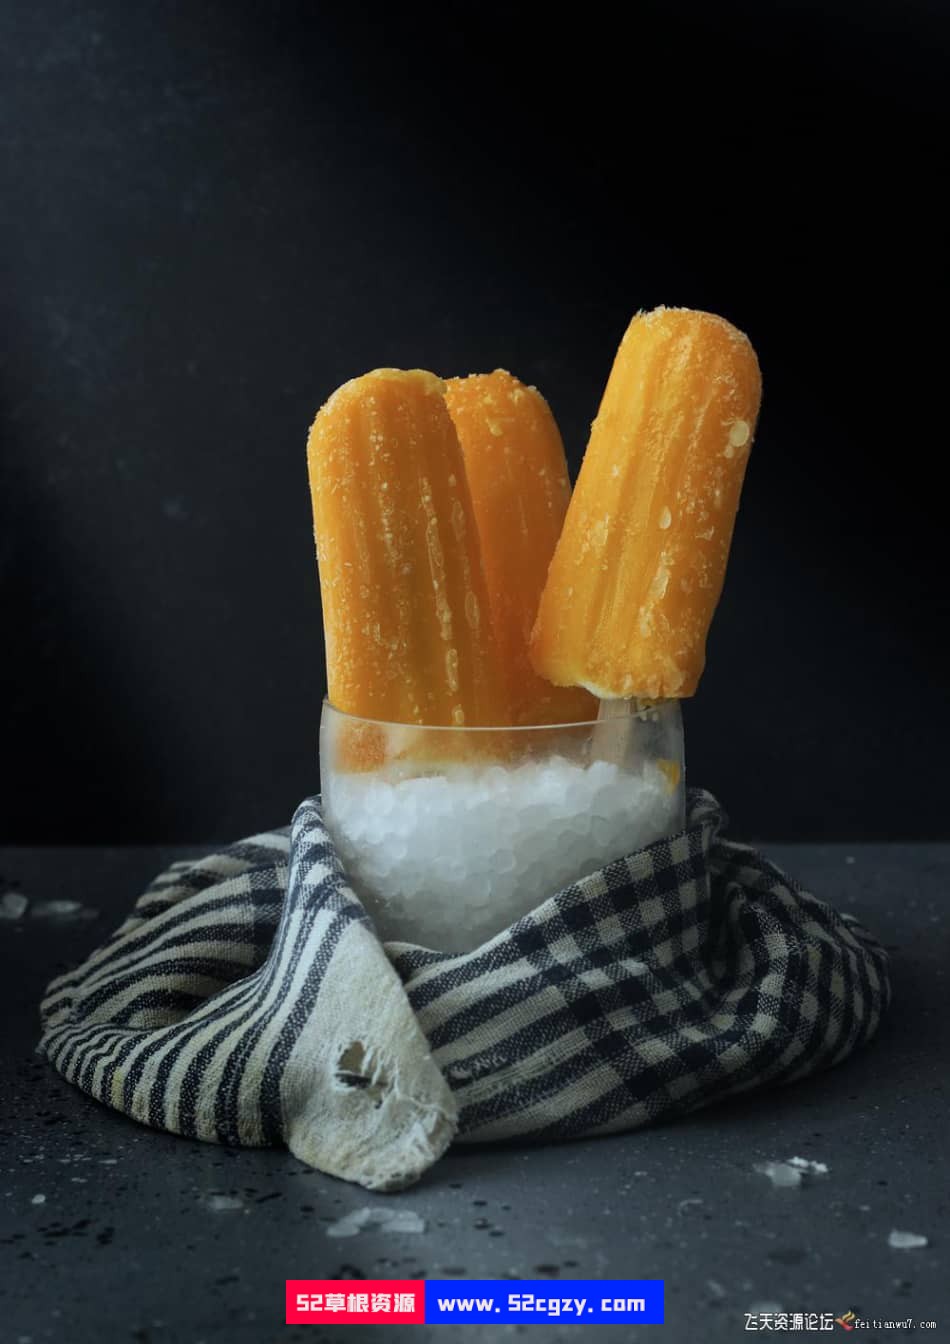 【中英字幕】黑暗和喜怒无常的冰棒美食产品摄影造型布光教程 摄影 第9张